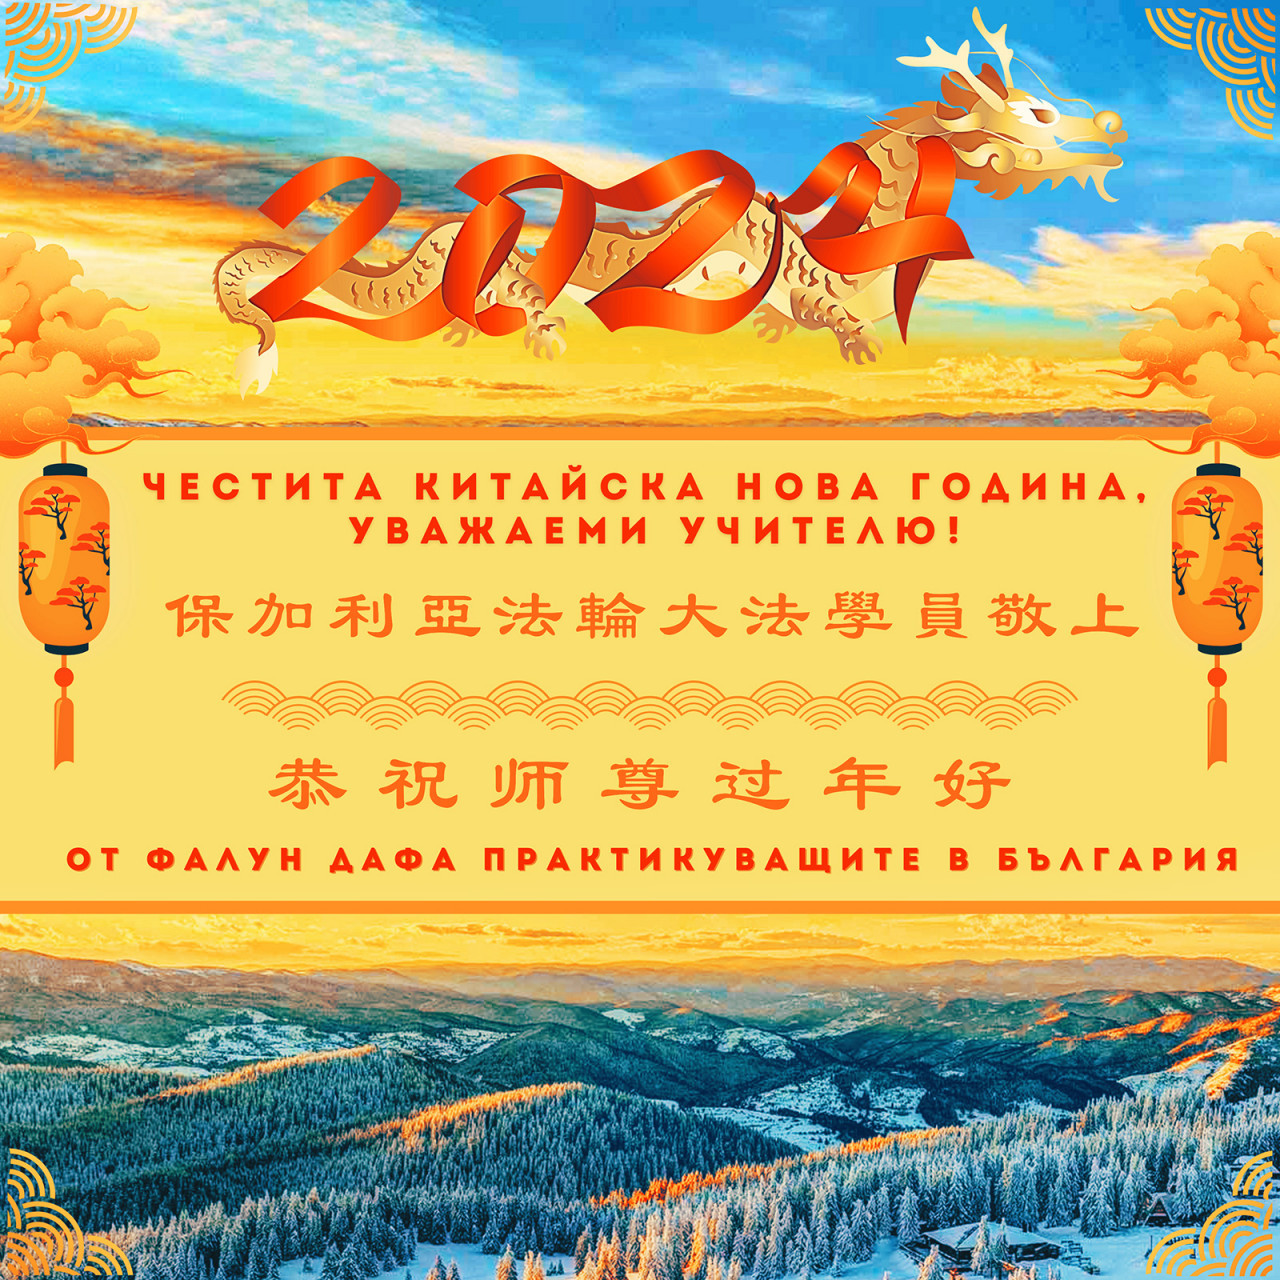 Praktikující Falun Dafa z Evropy přejí Mistrovi Li šťastný čínský Nový rok 2024